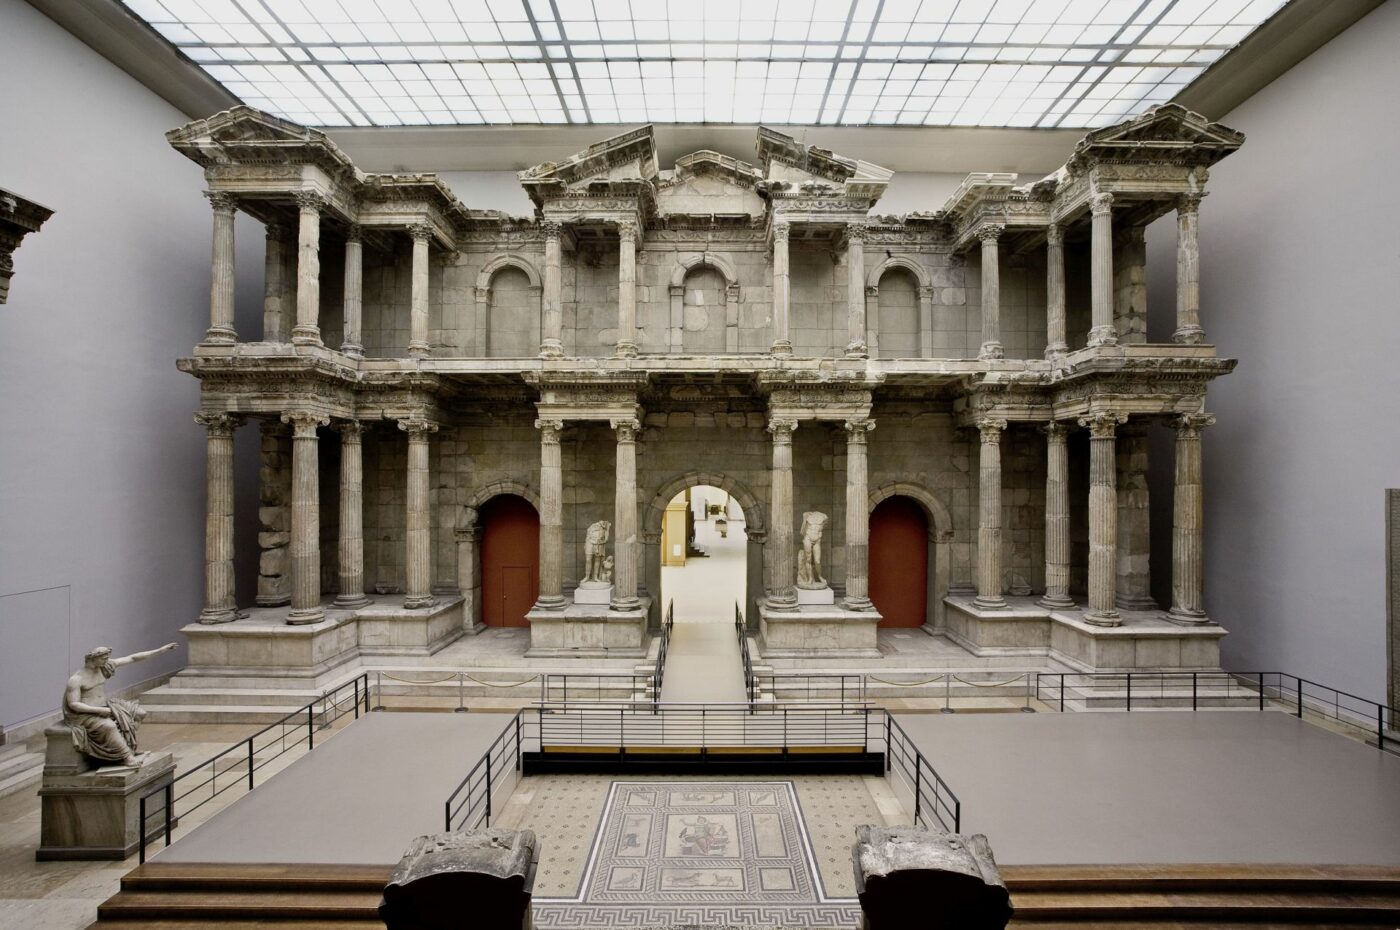 Das Markttor von Milet aus der Antikensammlung © Staatliche Museen zu Berlin, Antikensammlung / Johannes Laurentius